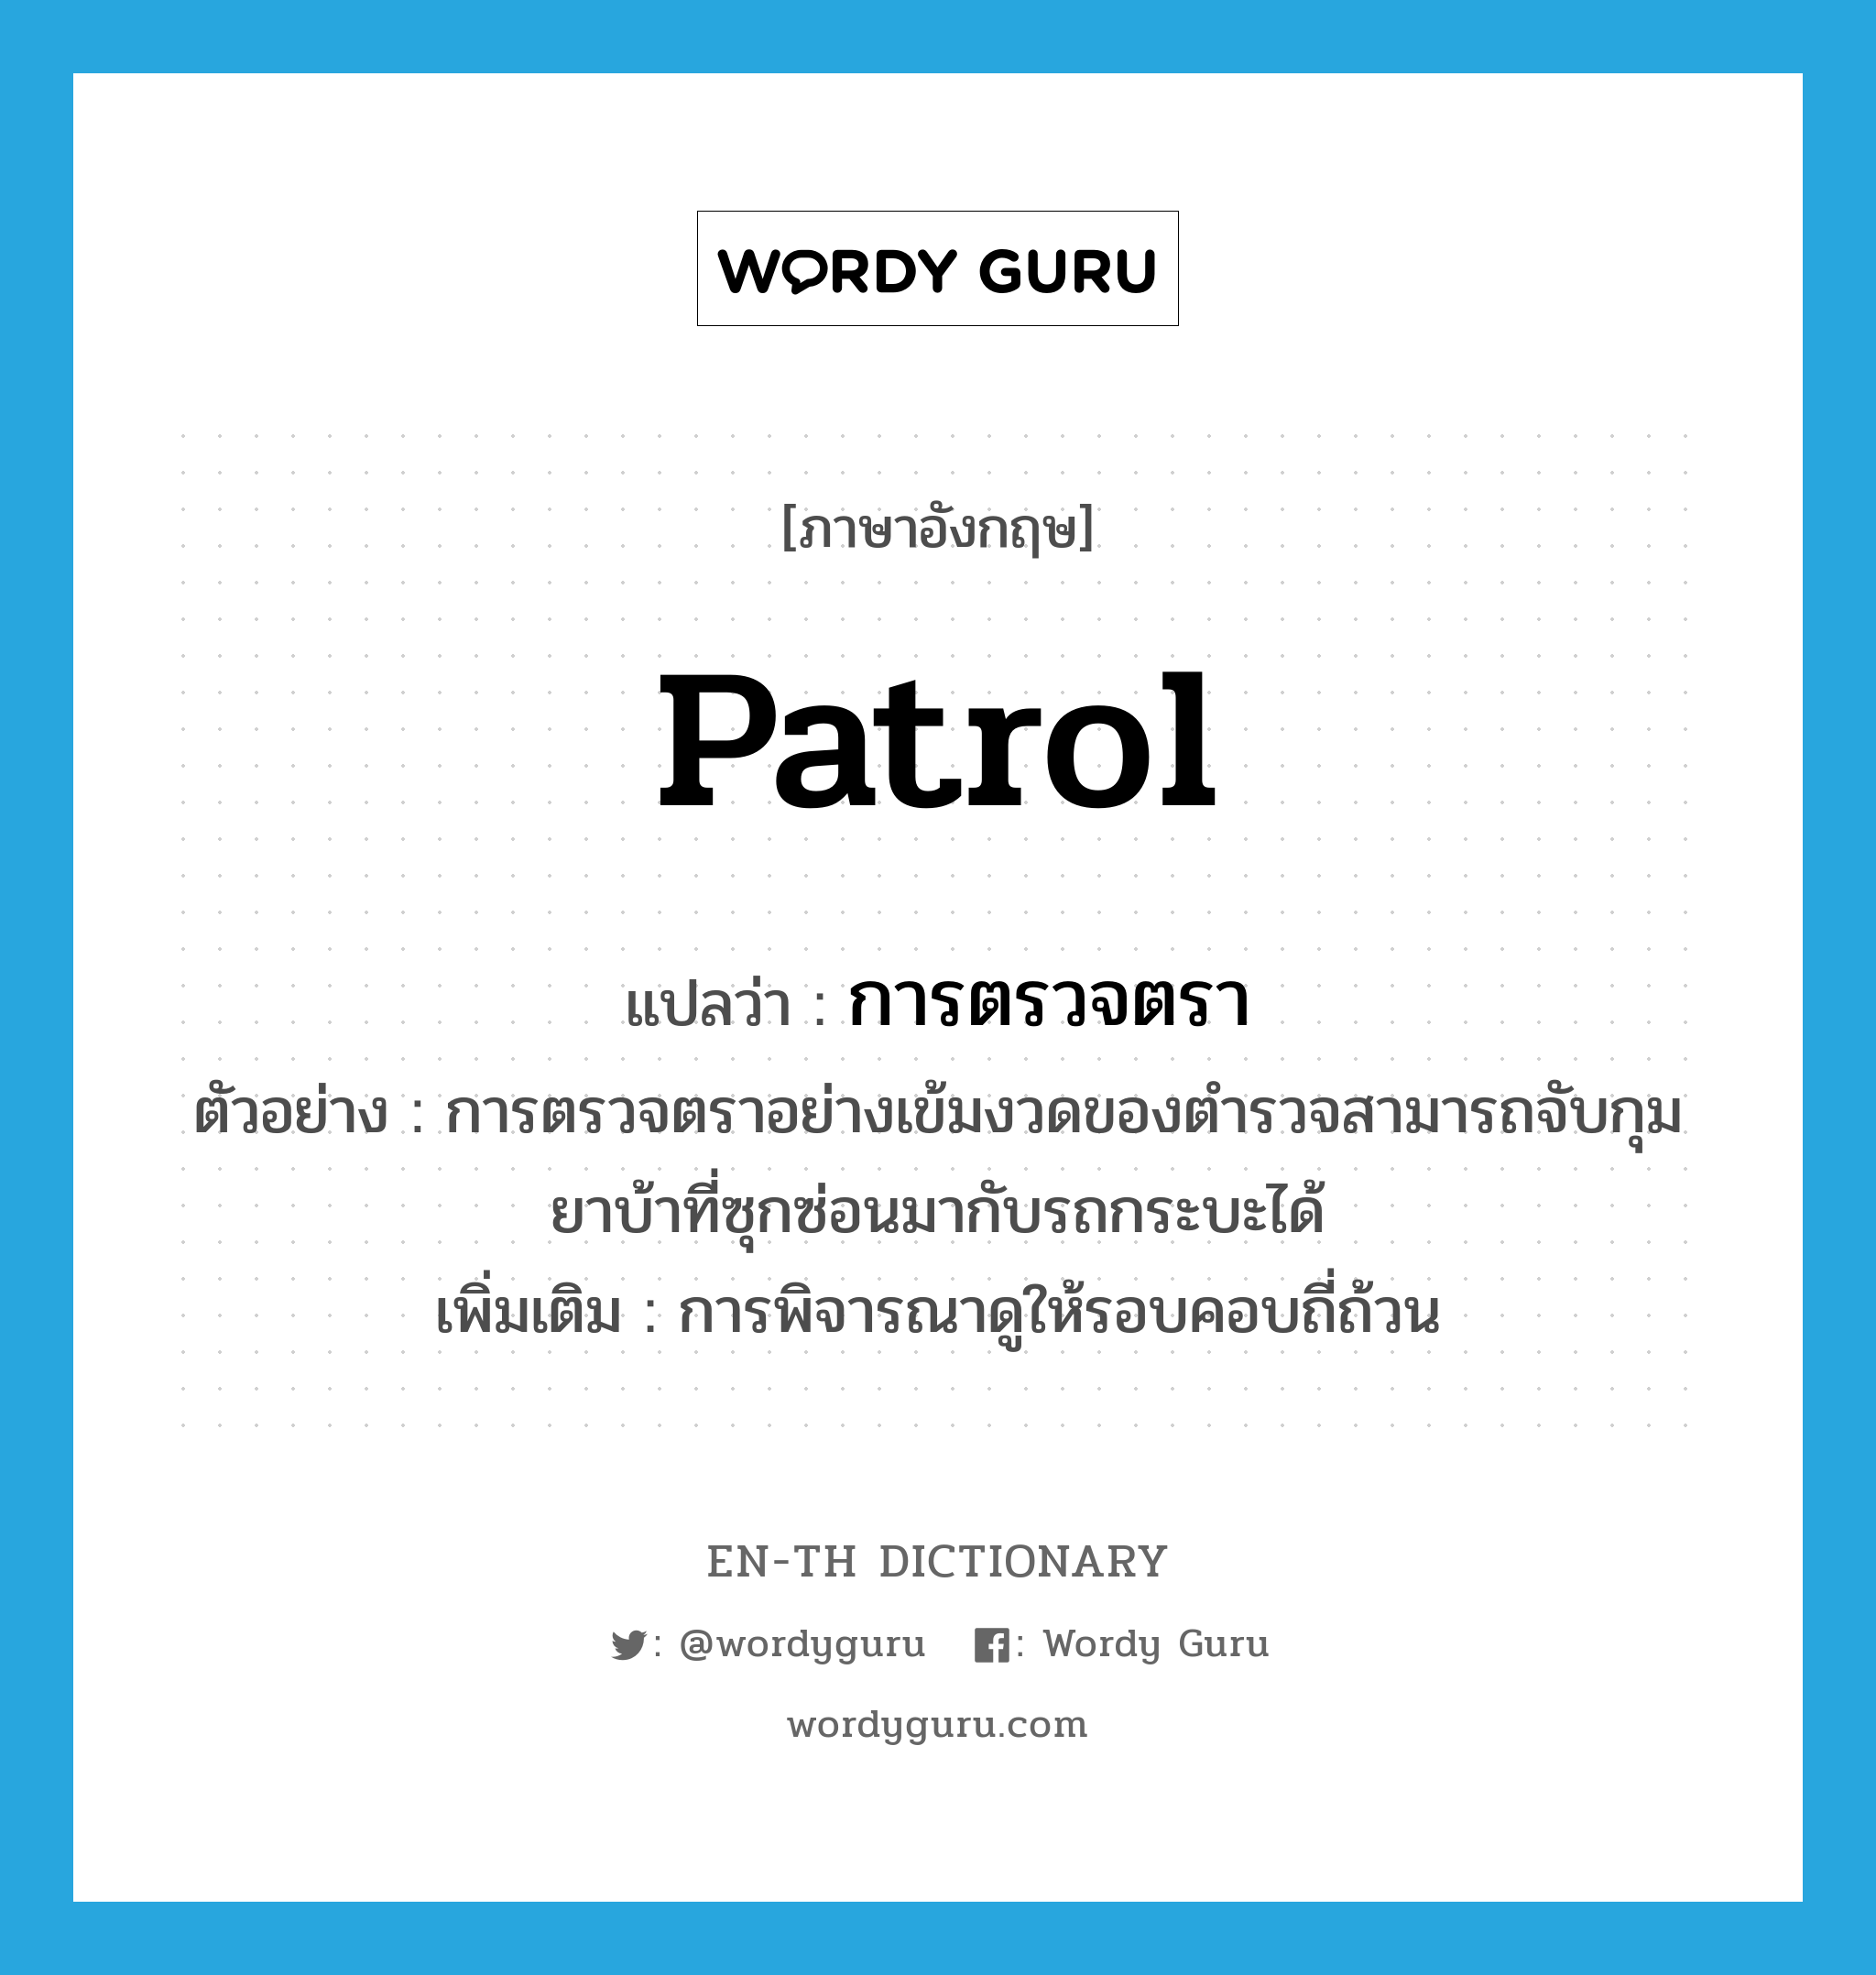 patrol แปลว่า?, คำศัพท์ภาษาอังกฤษ patrol แปลว่า การตรวจตรา ประเภท N ตัวอย่าง การตรวจตราอย่างเข้มงวดของตำรวจสามารถจับกุมยาบ้าที่ซุกซ่อนมากับรถกระบะได้ เพิ่มเติม การพิจารณาดูให้รอบคอบถี่ถ้วน หมวด N